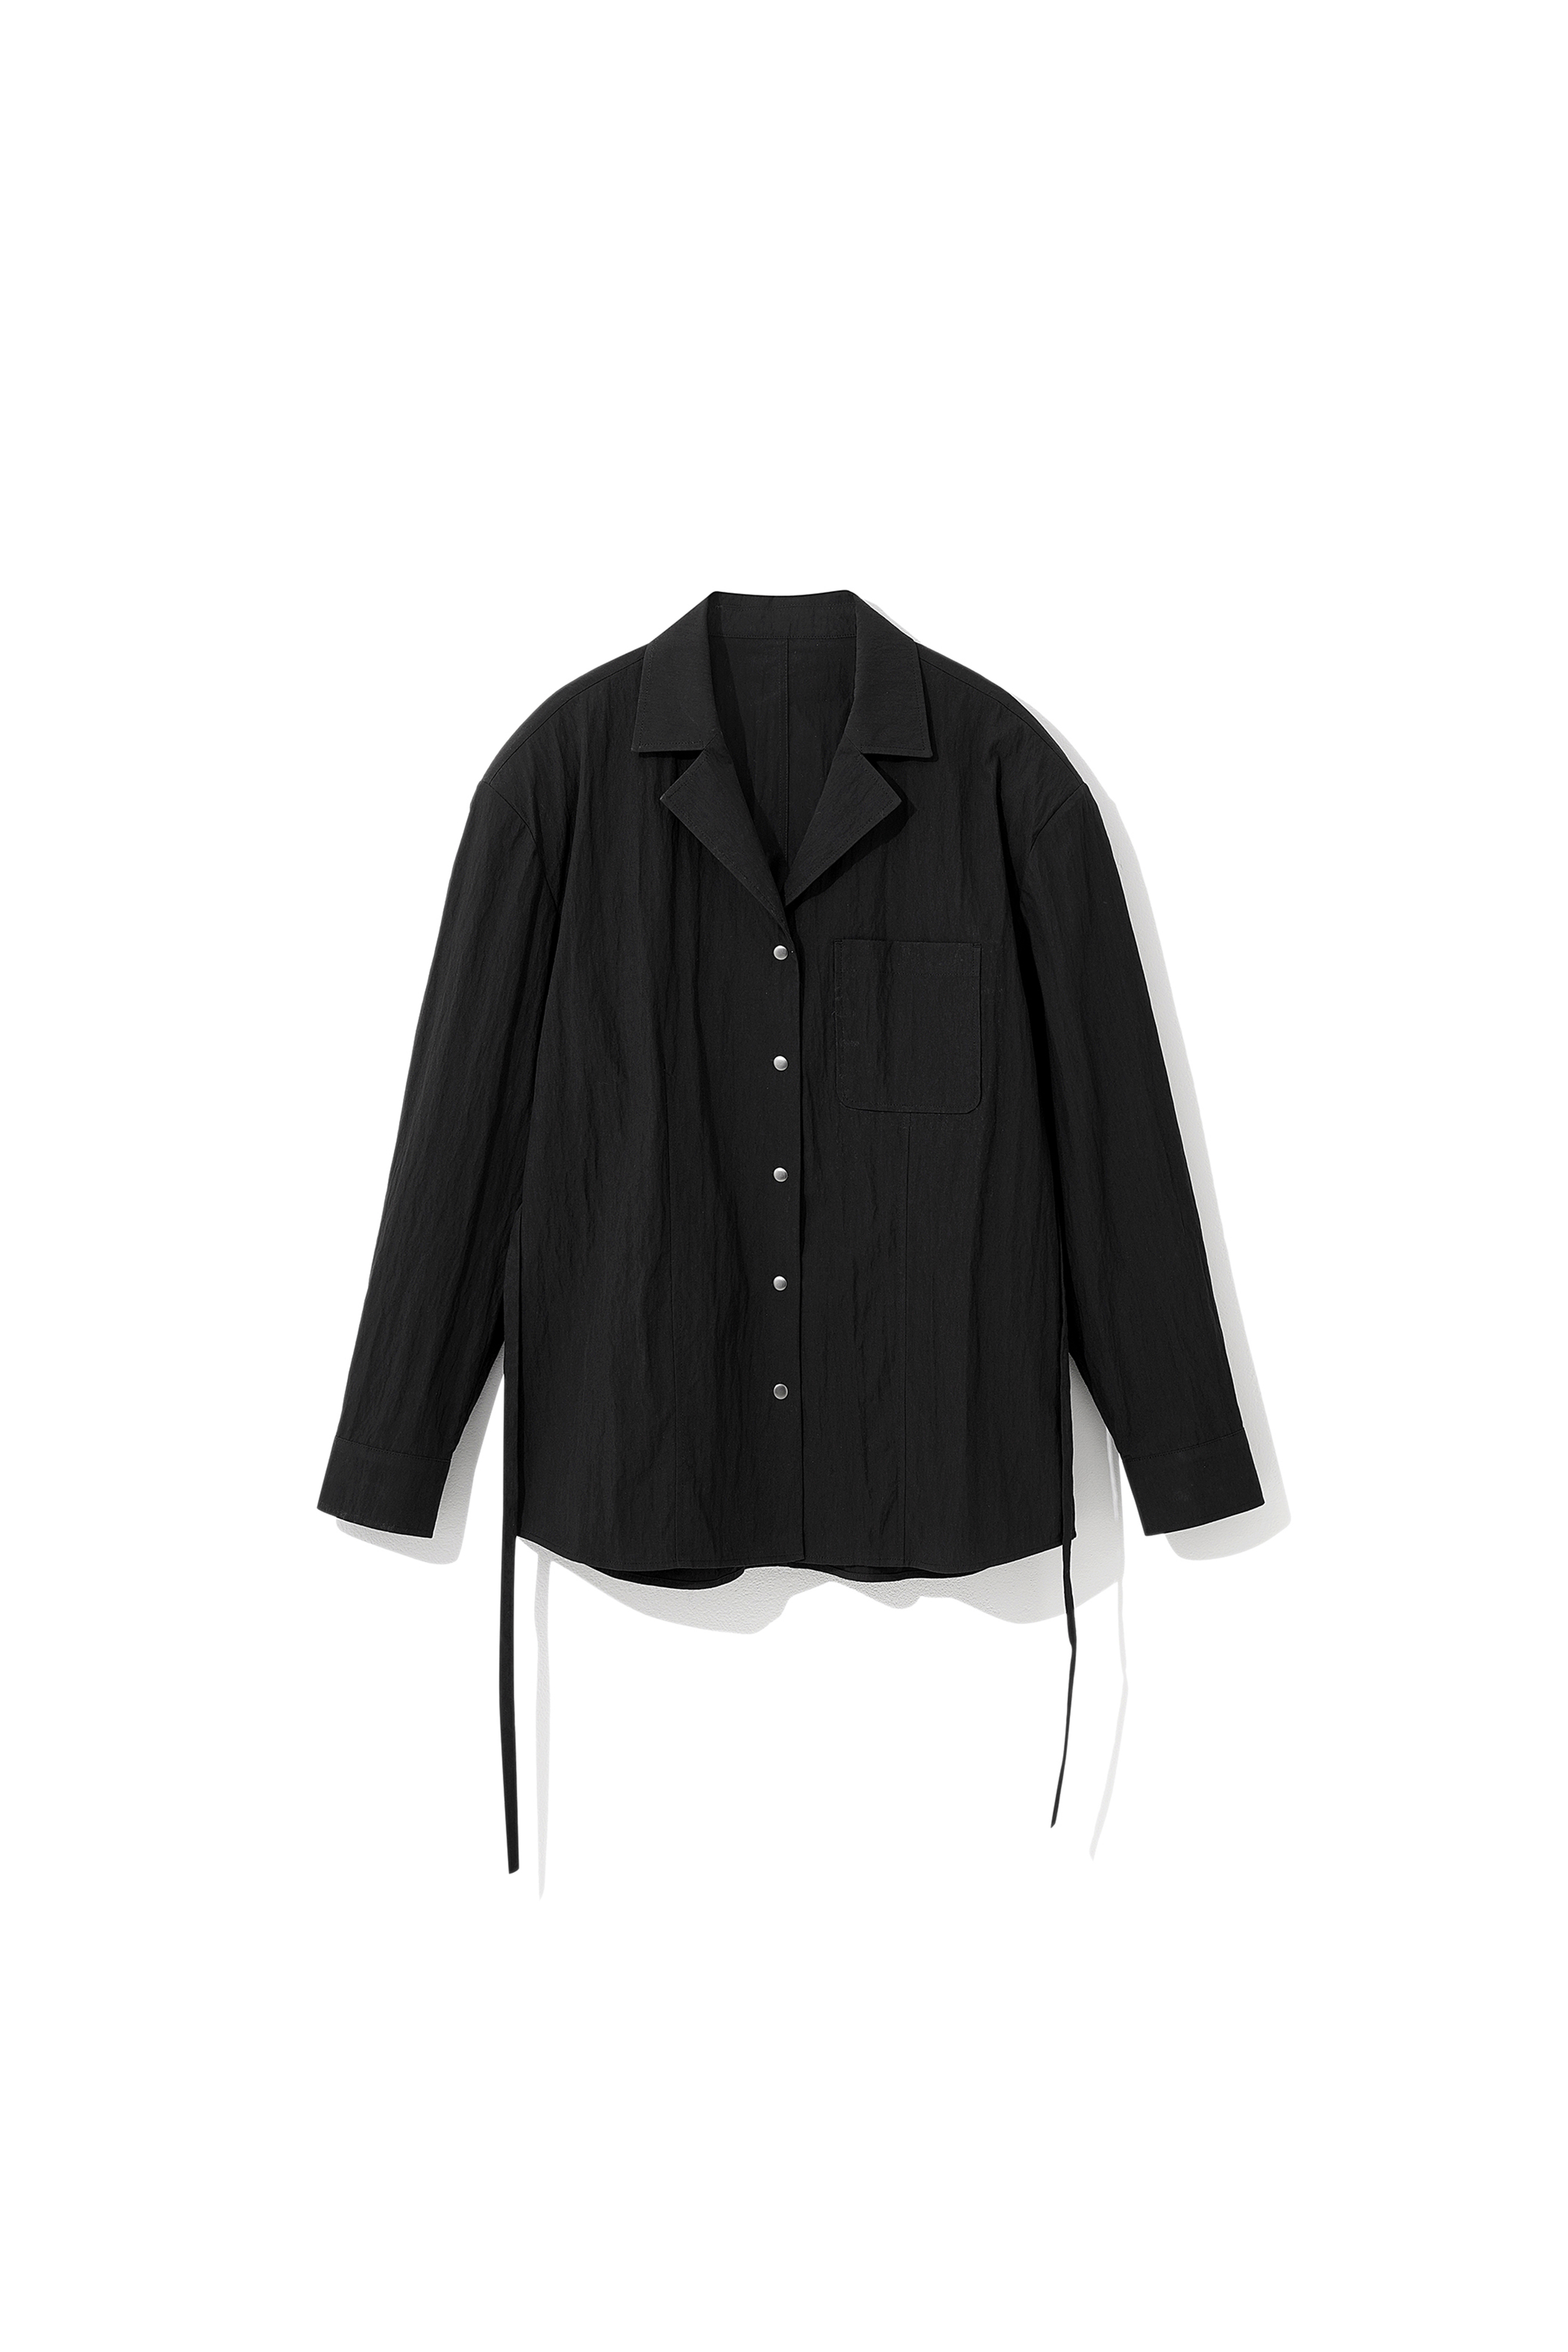 3rd) Kade 2-Way Open-Collar Shirts Black